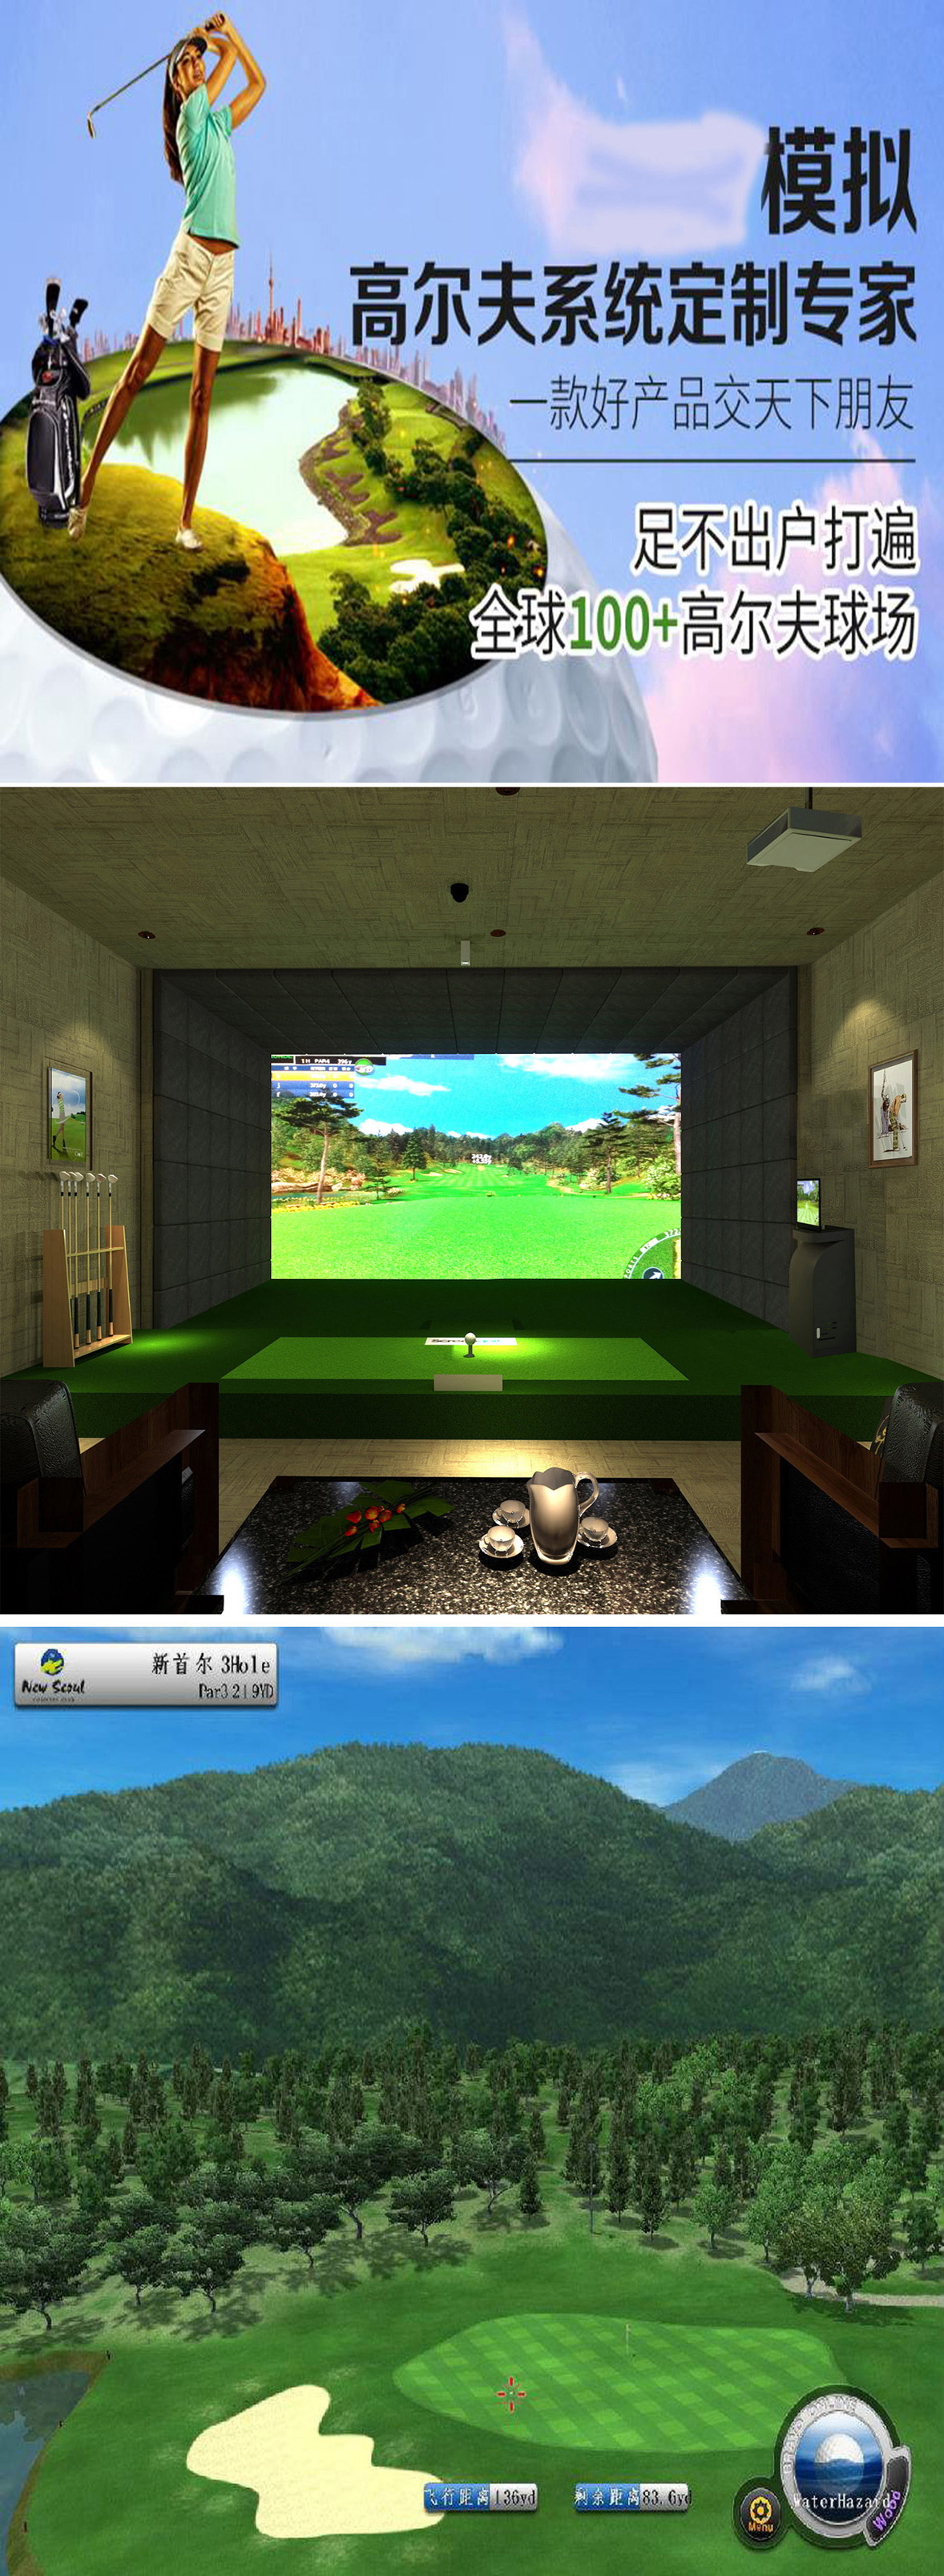 模拟室内高尔夫球场 02.jpg